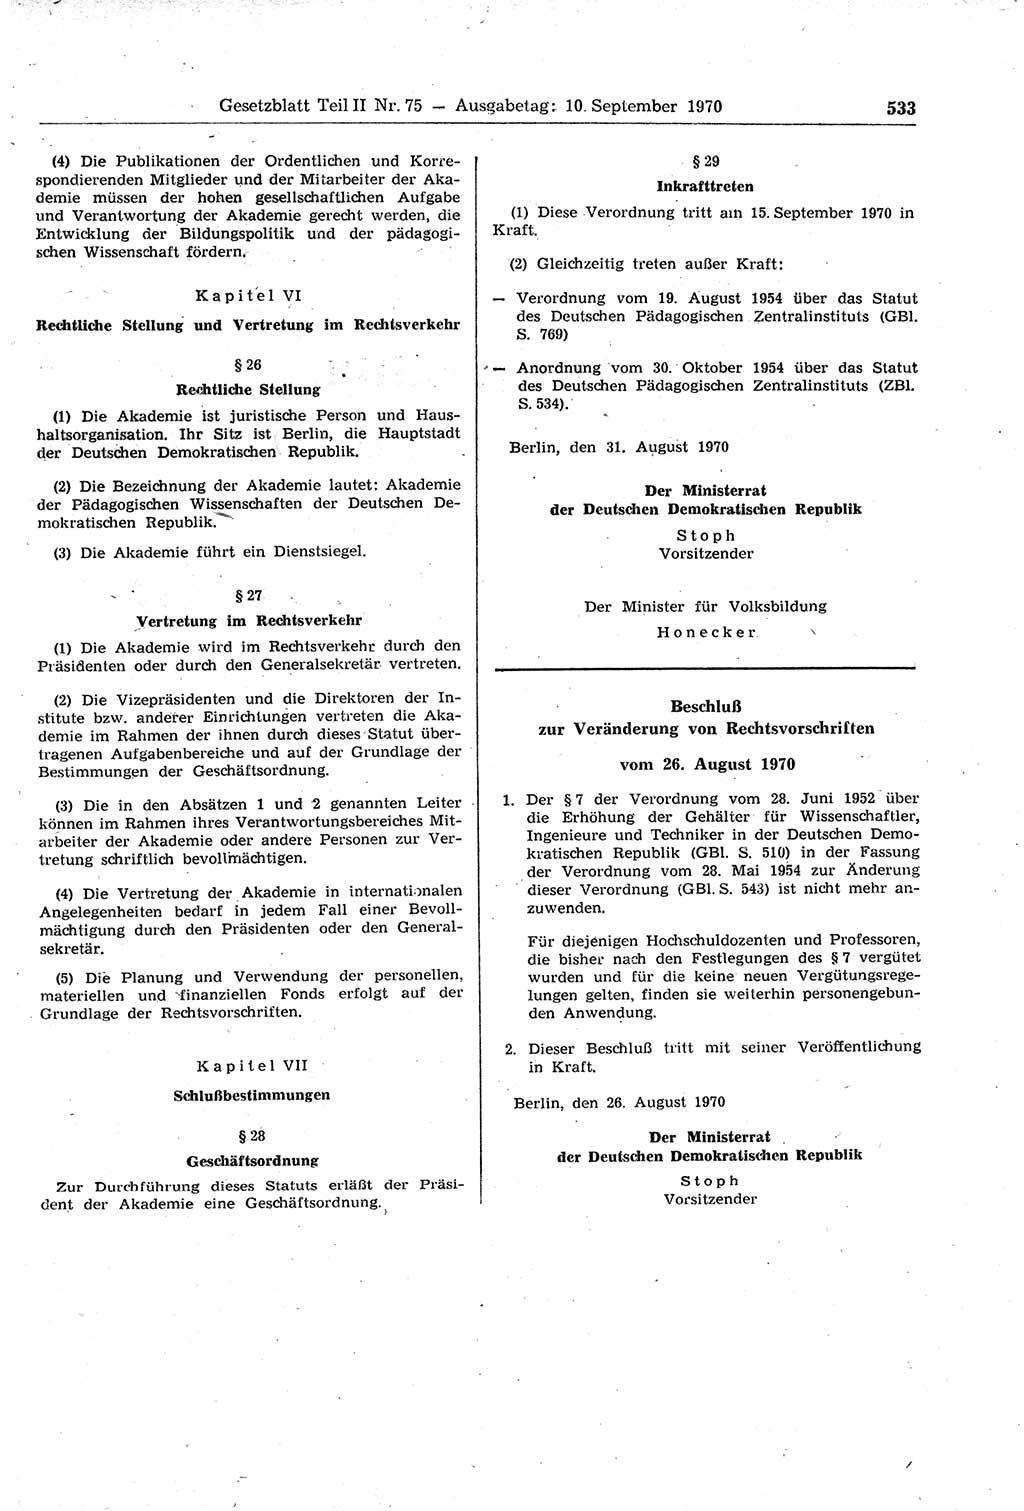 Gesetzblatt (GBl.) der Deutschen Demokratischen Republik (DDR) Teil ⅠⅠ 1970, Seite 533 (GBl. DDR ⅠⅠ 1970, S. 533)